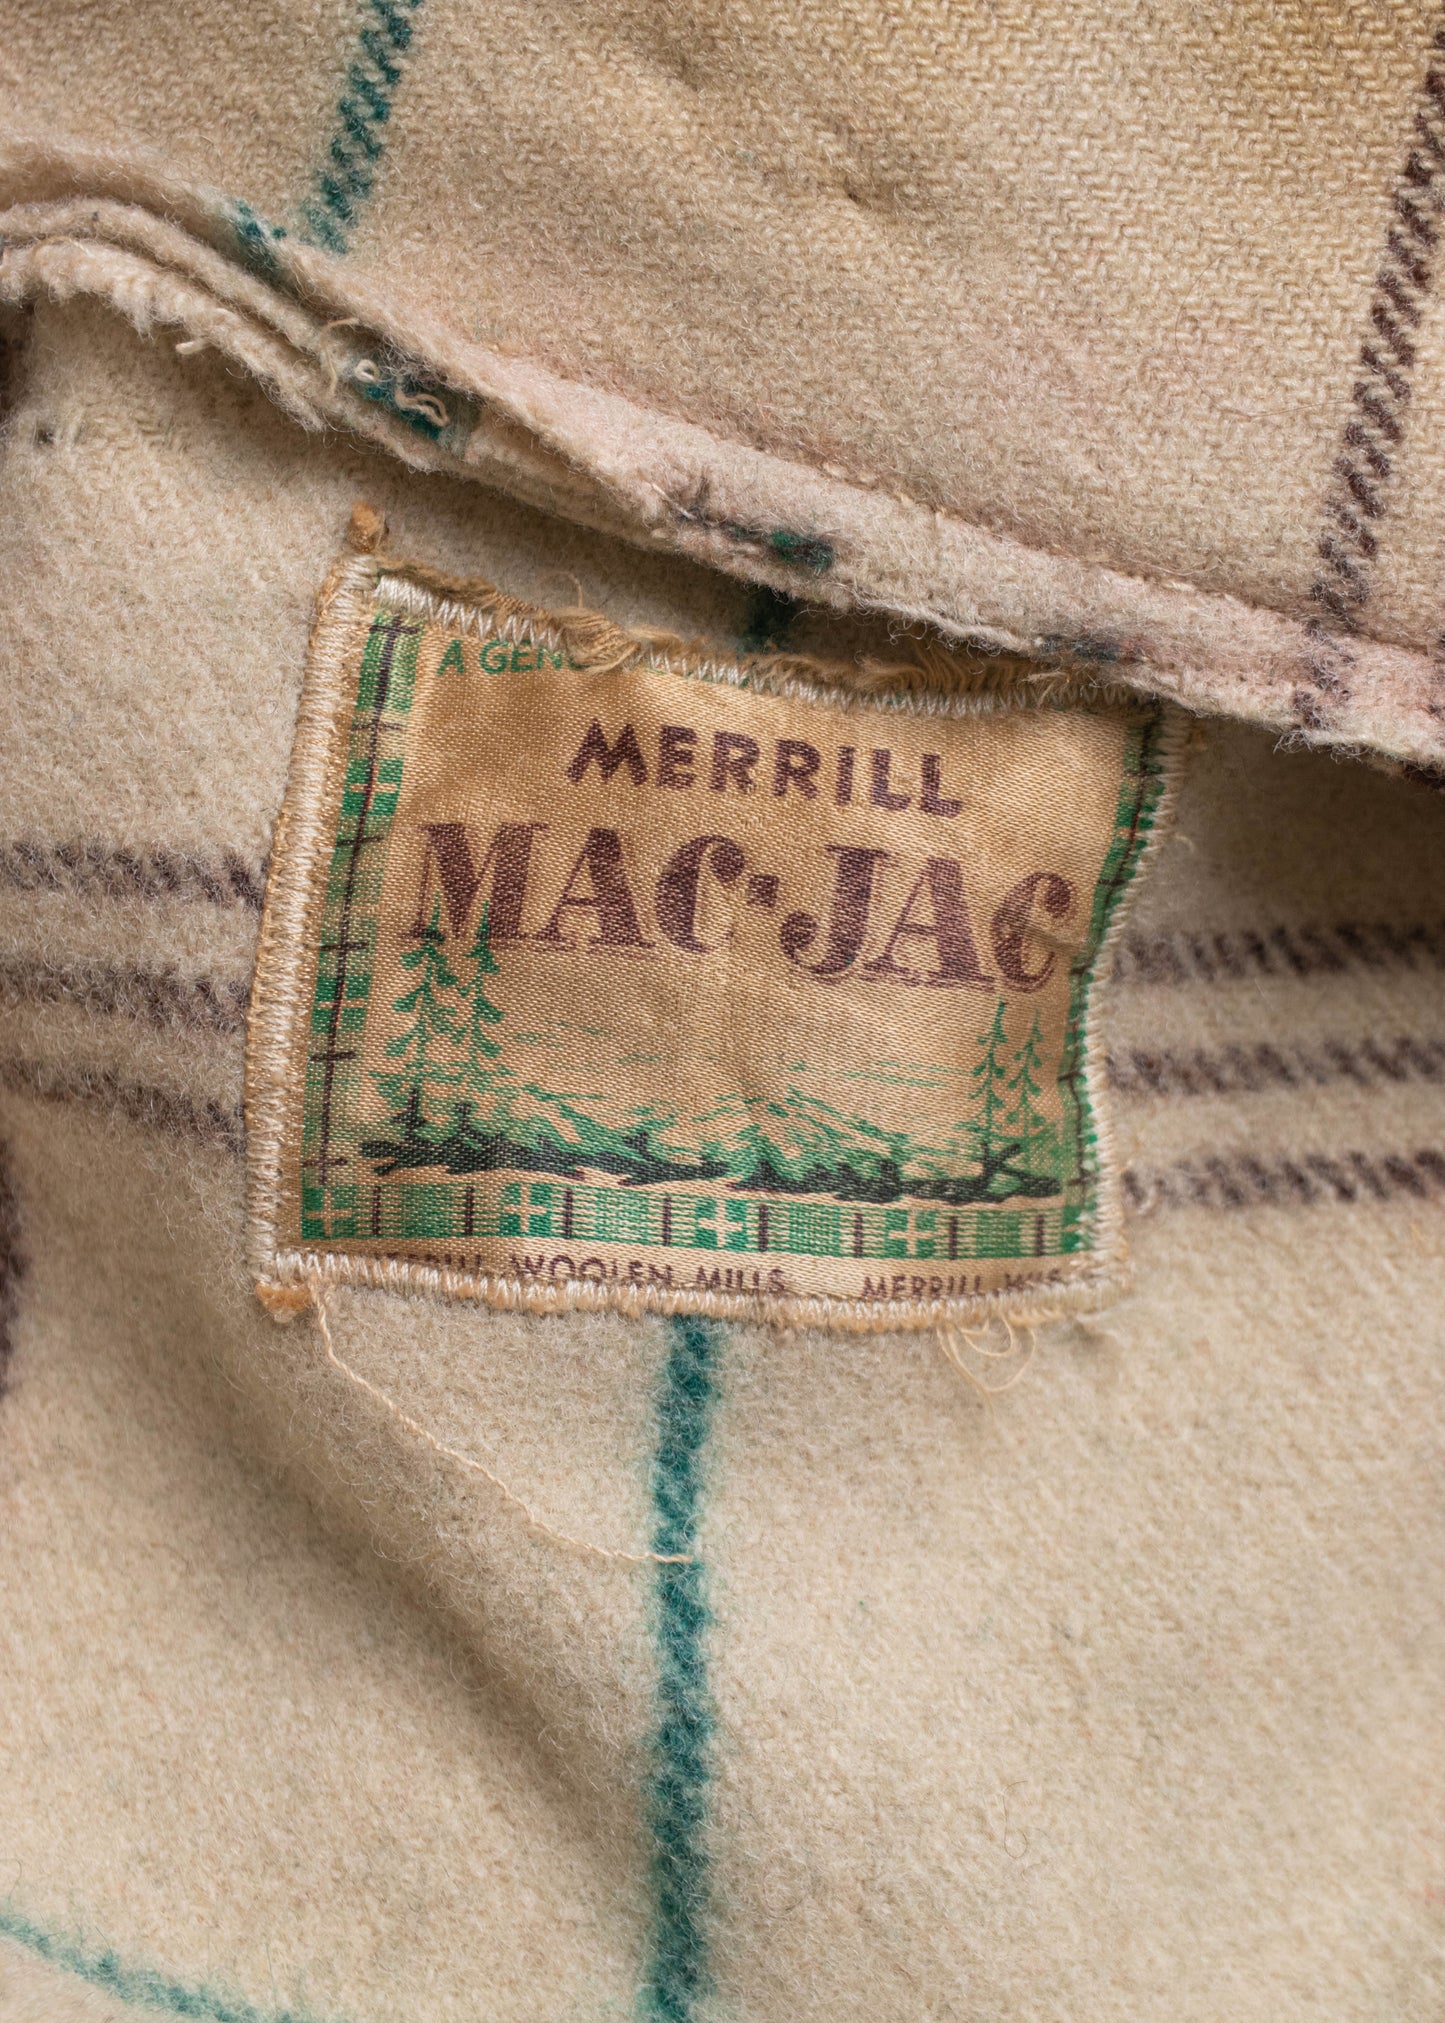 1970s Merrill Mac-Jac Flannel Wool Zip Up Jacket Size S/M